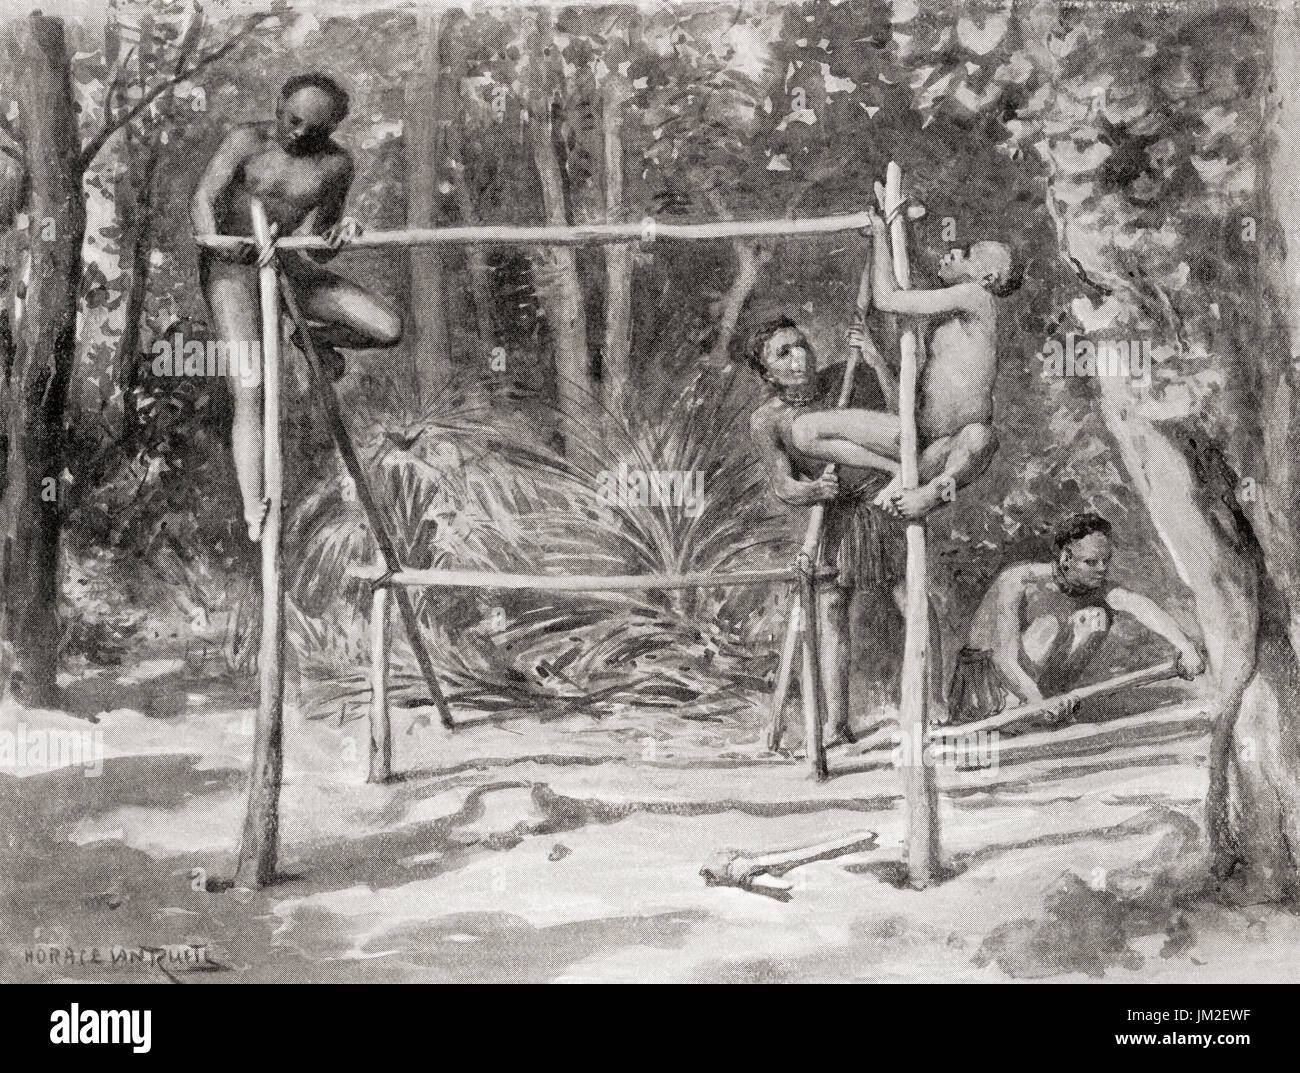 Frühen indianischen Ureinwohner Bau einer Unterkunft durch Stangen zusammenbinden und mit Blättern bedecken.  Hutchinson Geschichte der Nationen veröffentlichte 1915. Stockfoto